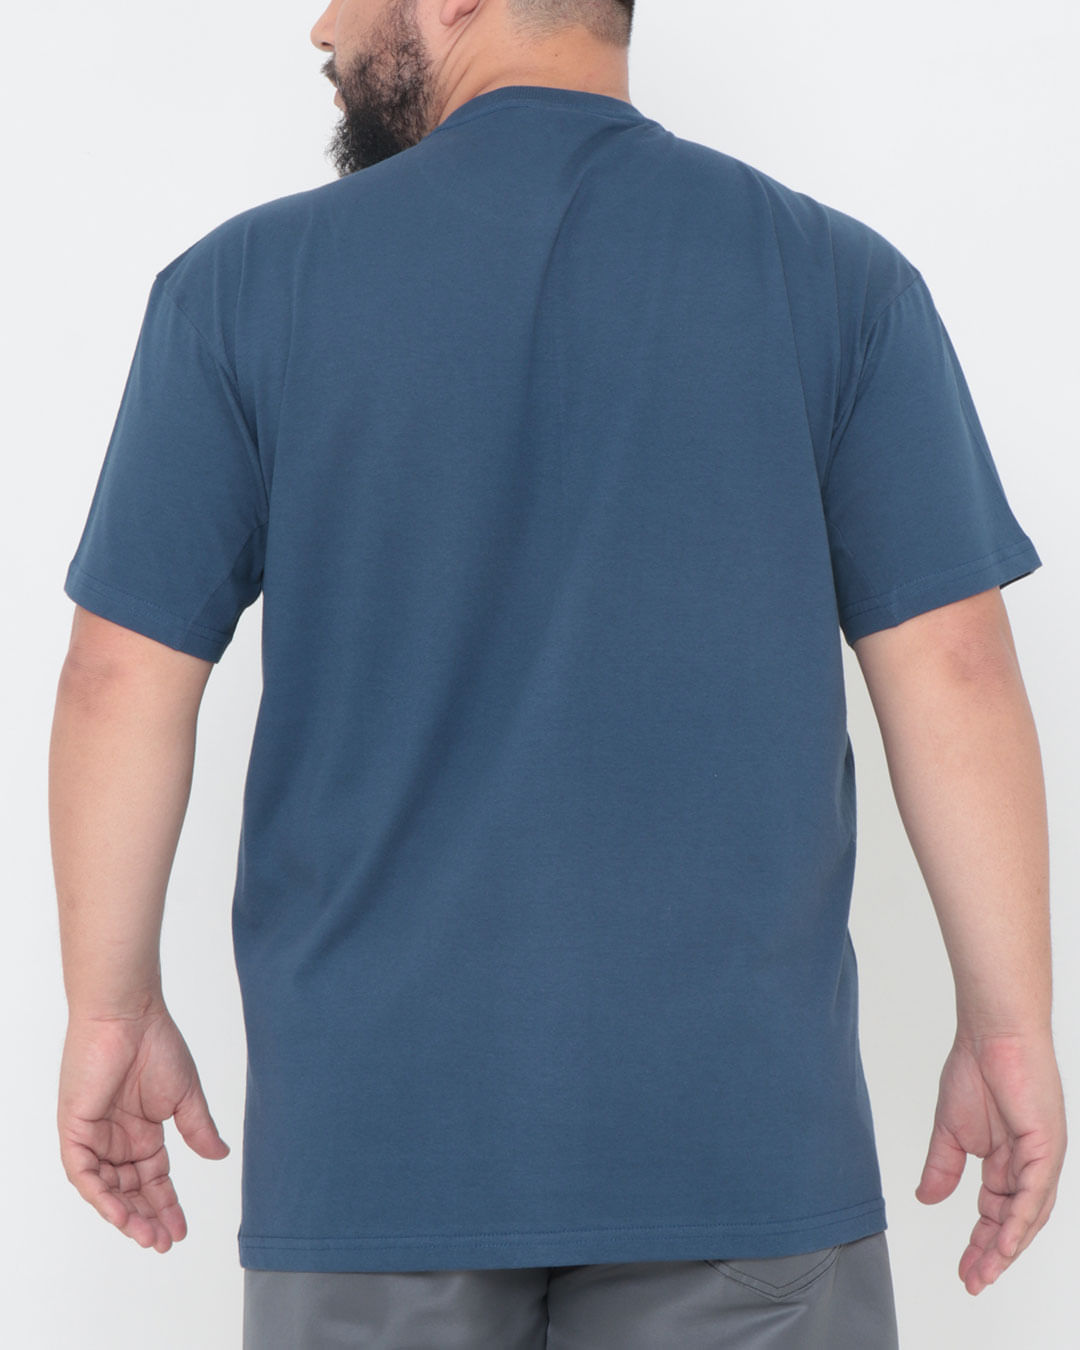 Camiseta-Masculina-Plus-Size-Manga-Curta-Ecko-Azul-Marinho-